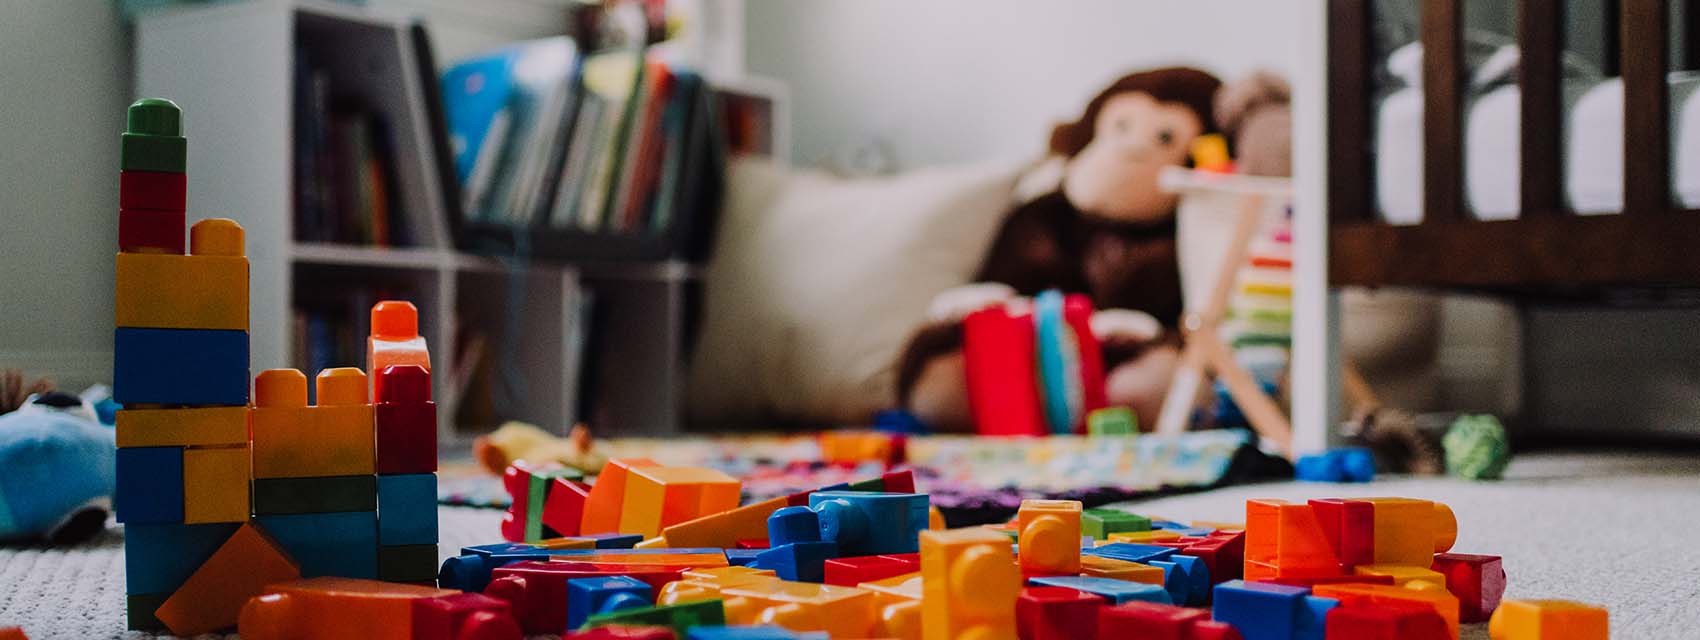 Messy blocks in child's room